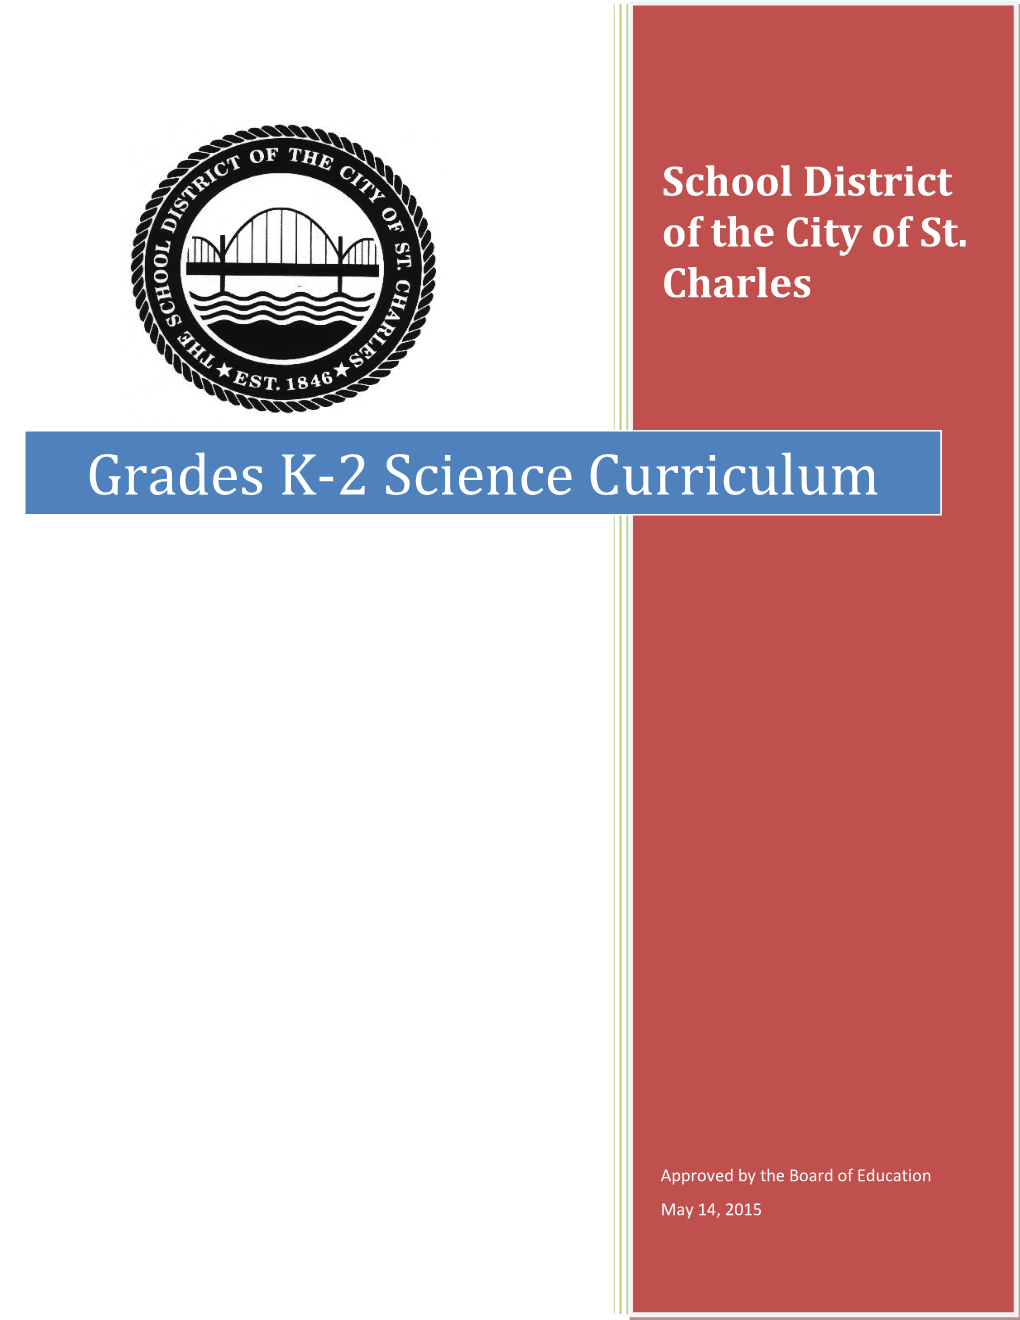 Grades K-2 Science Curriculum